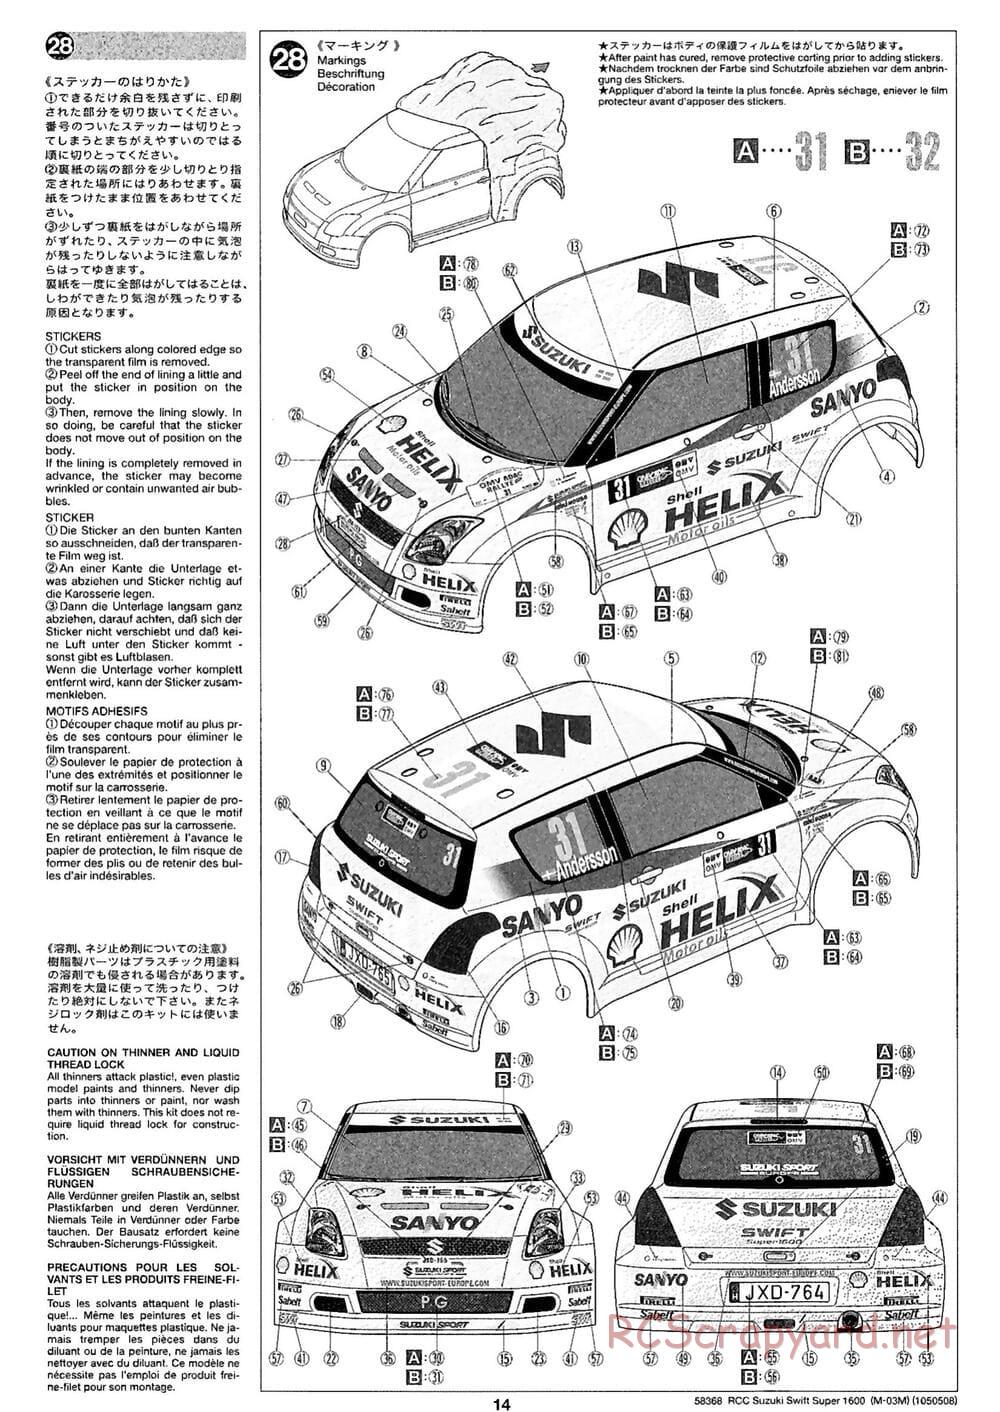 Tamiya - Suzuki Swift Super 1600 - M-05Ra Chassis - Body Info - Page 2